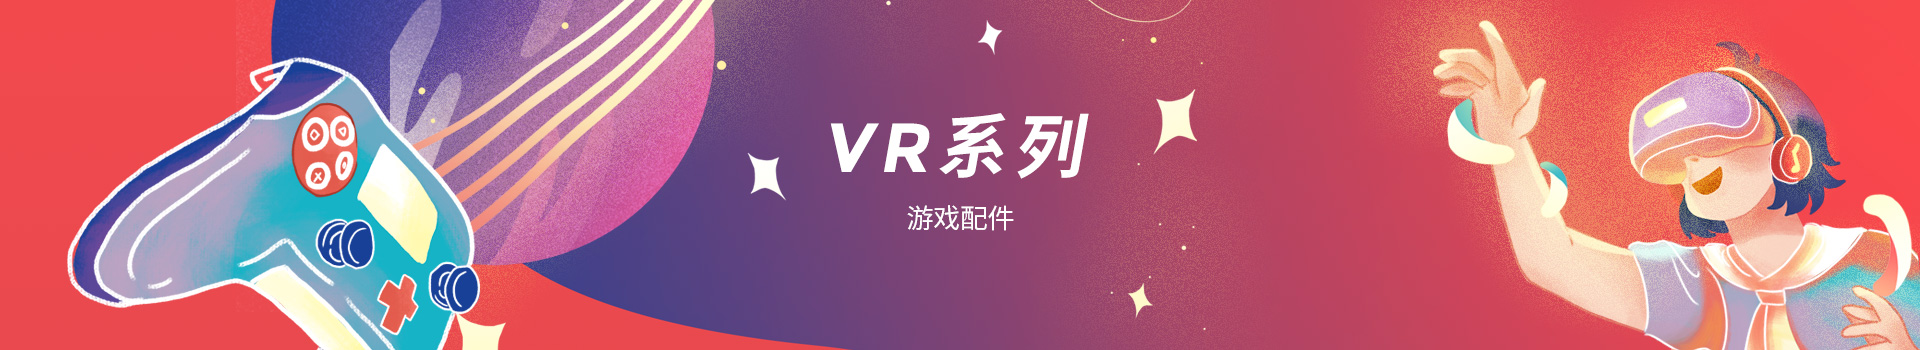 VR系列